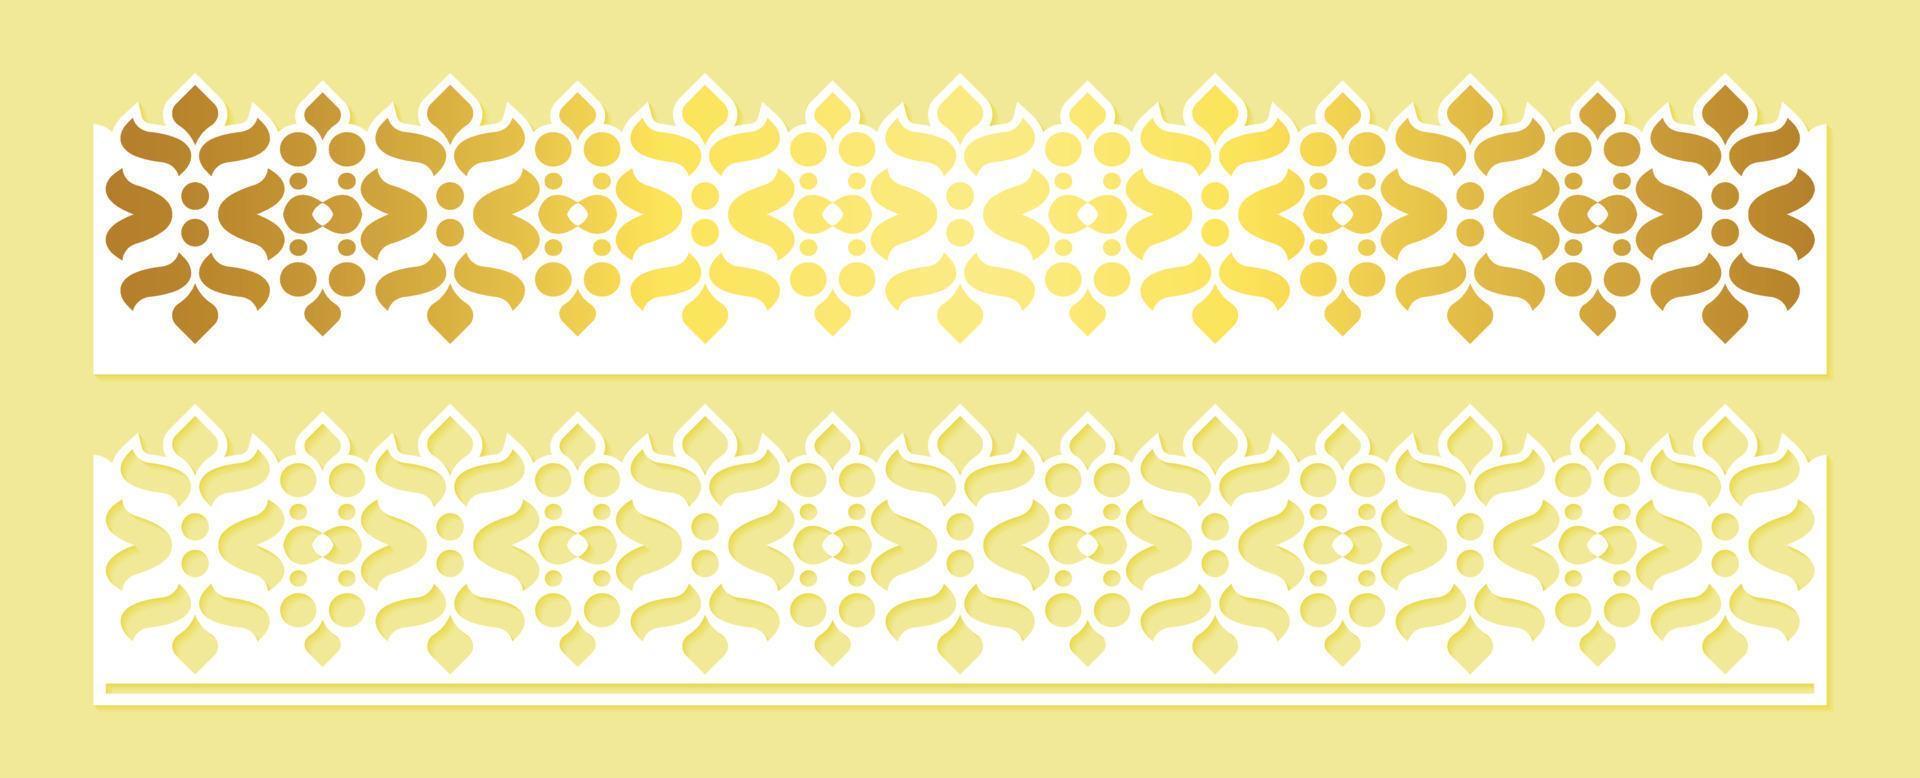 líneas de corte de papel decorativas con borde dorado vector